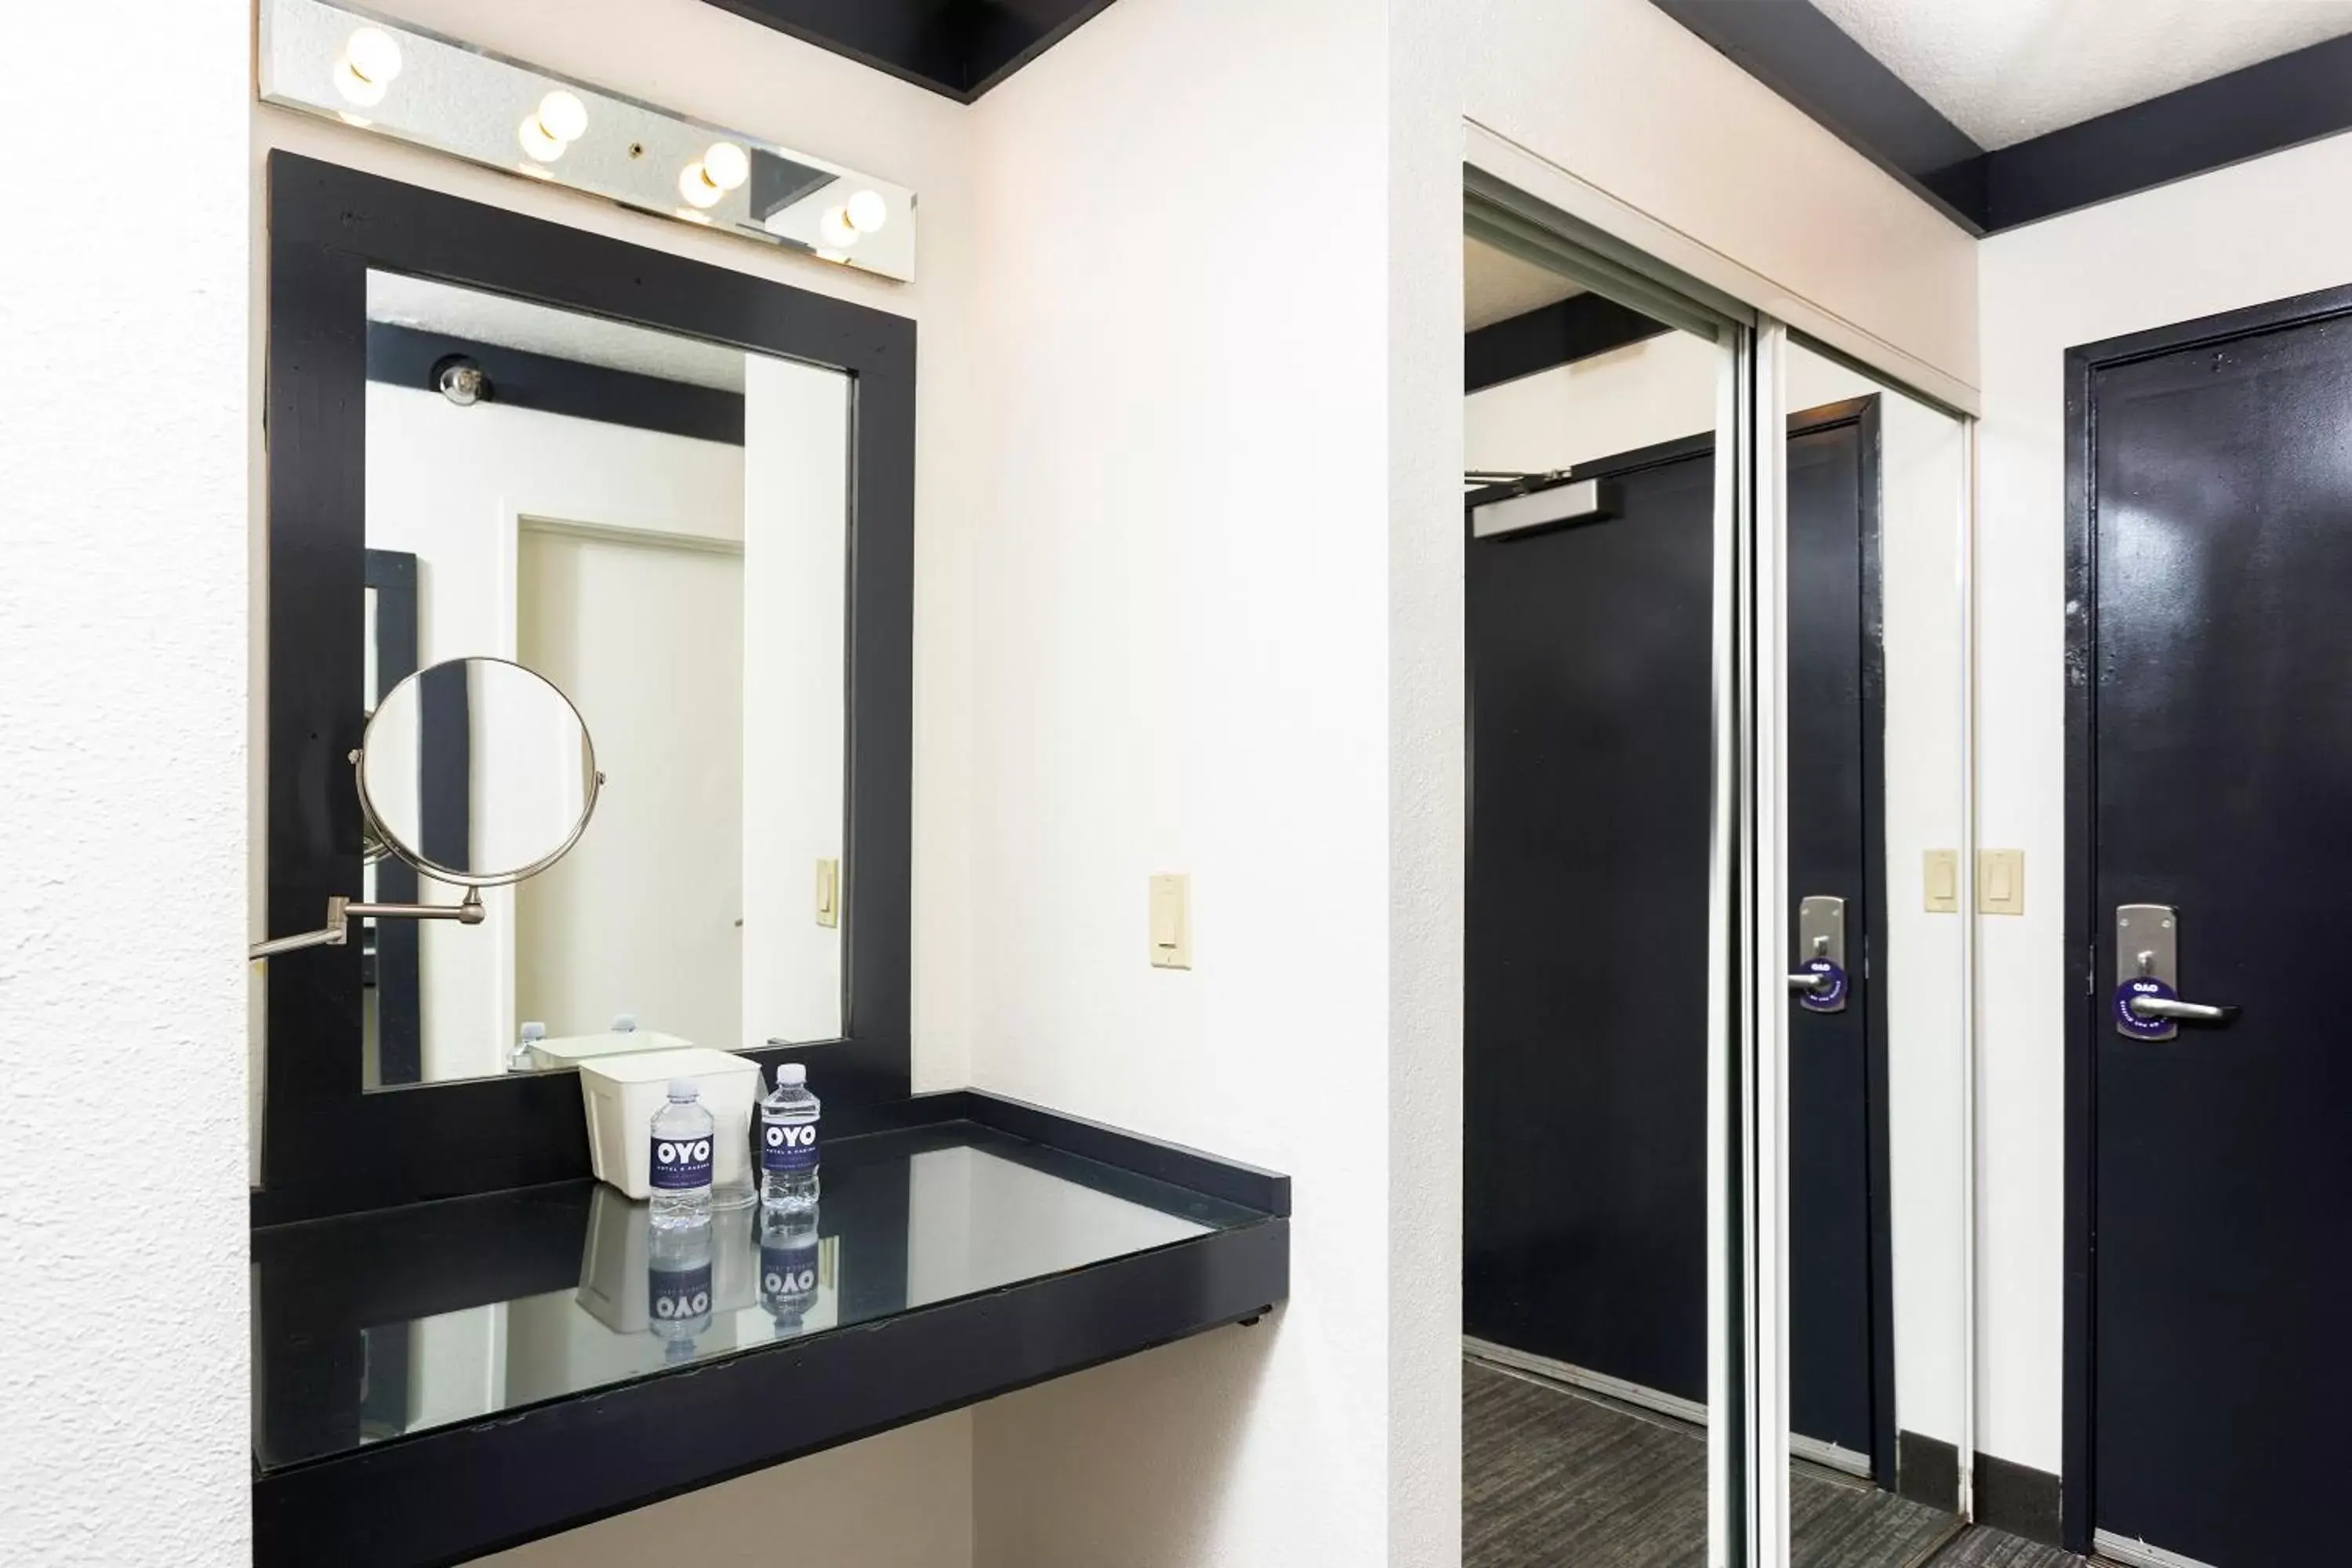 Area and facilities, Bathroom in OYO Hotel and Casino Las Vegas